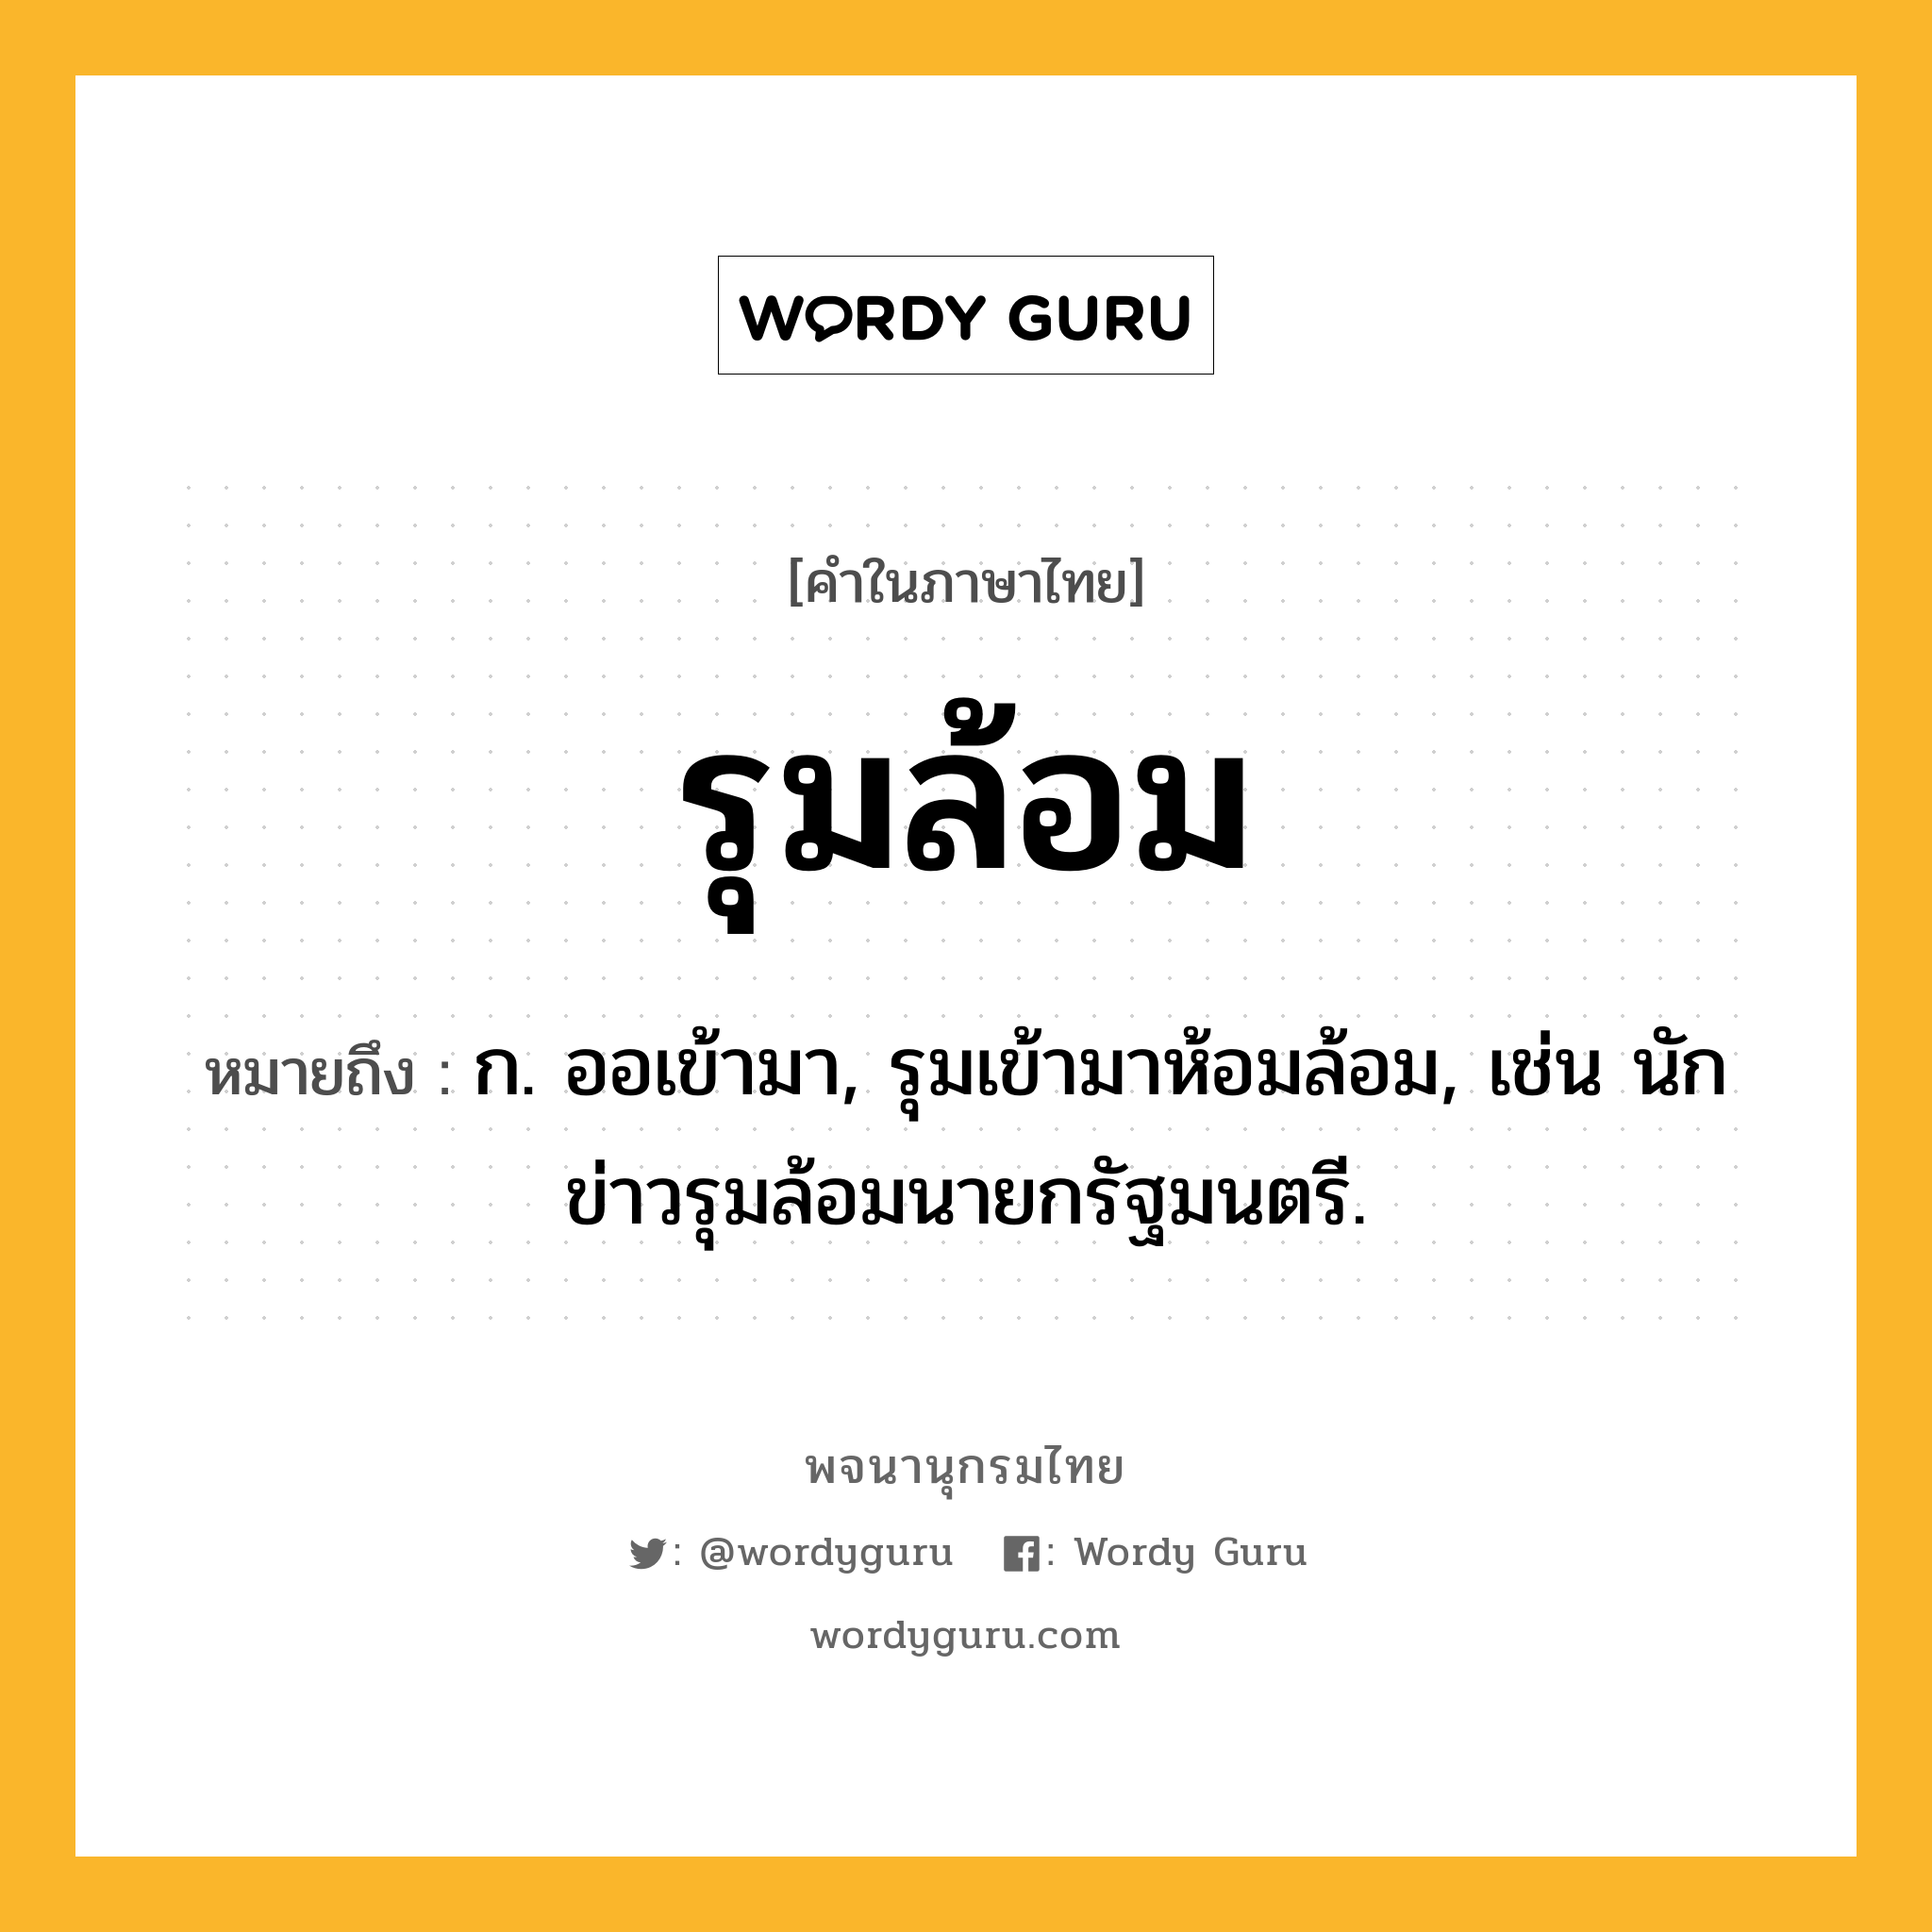 รุมล้อม หมายถึงอะไร?, คำในภาษาไทย รุมล้อม หมายถึง ก. ออเข้ามา, รุมเข้ามาห้อมล้อม, เช่น นักข่าวรุมล้อมนายกรัฐมนตรี.